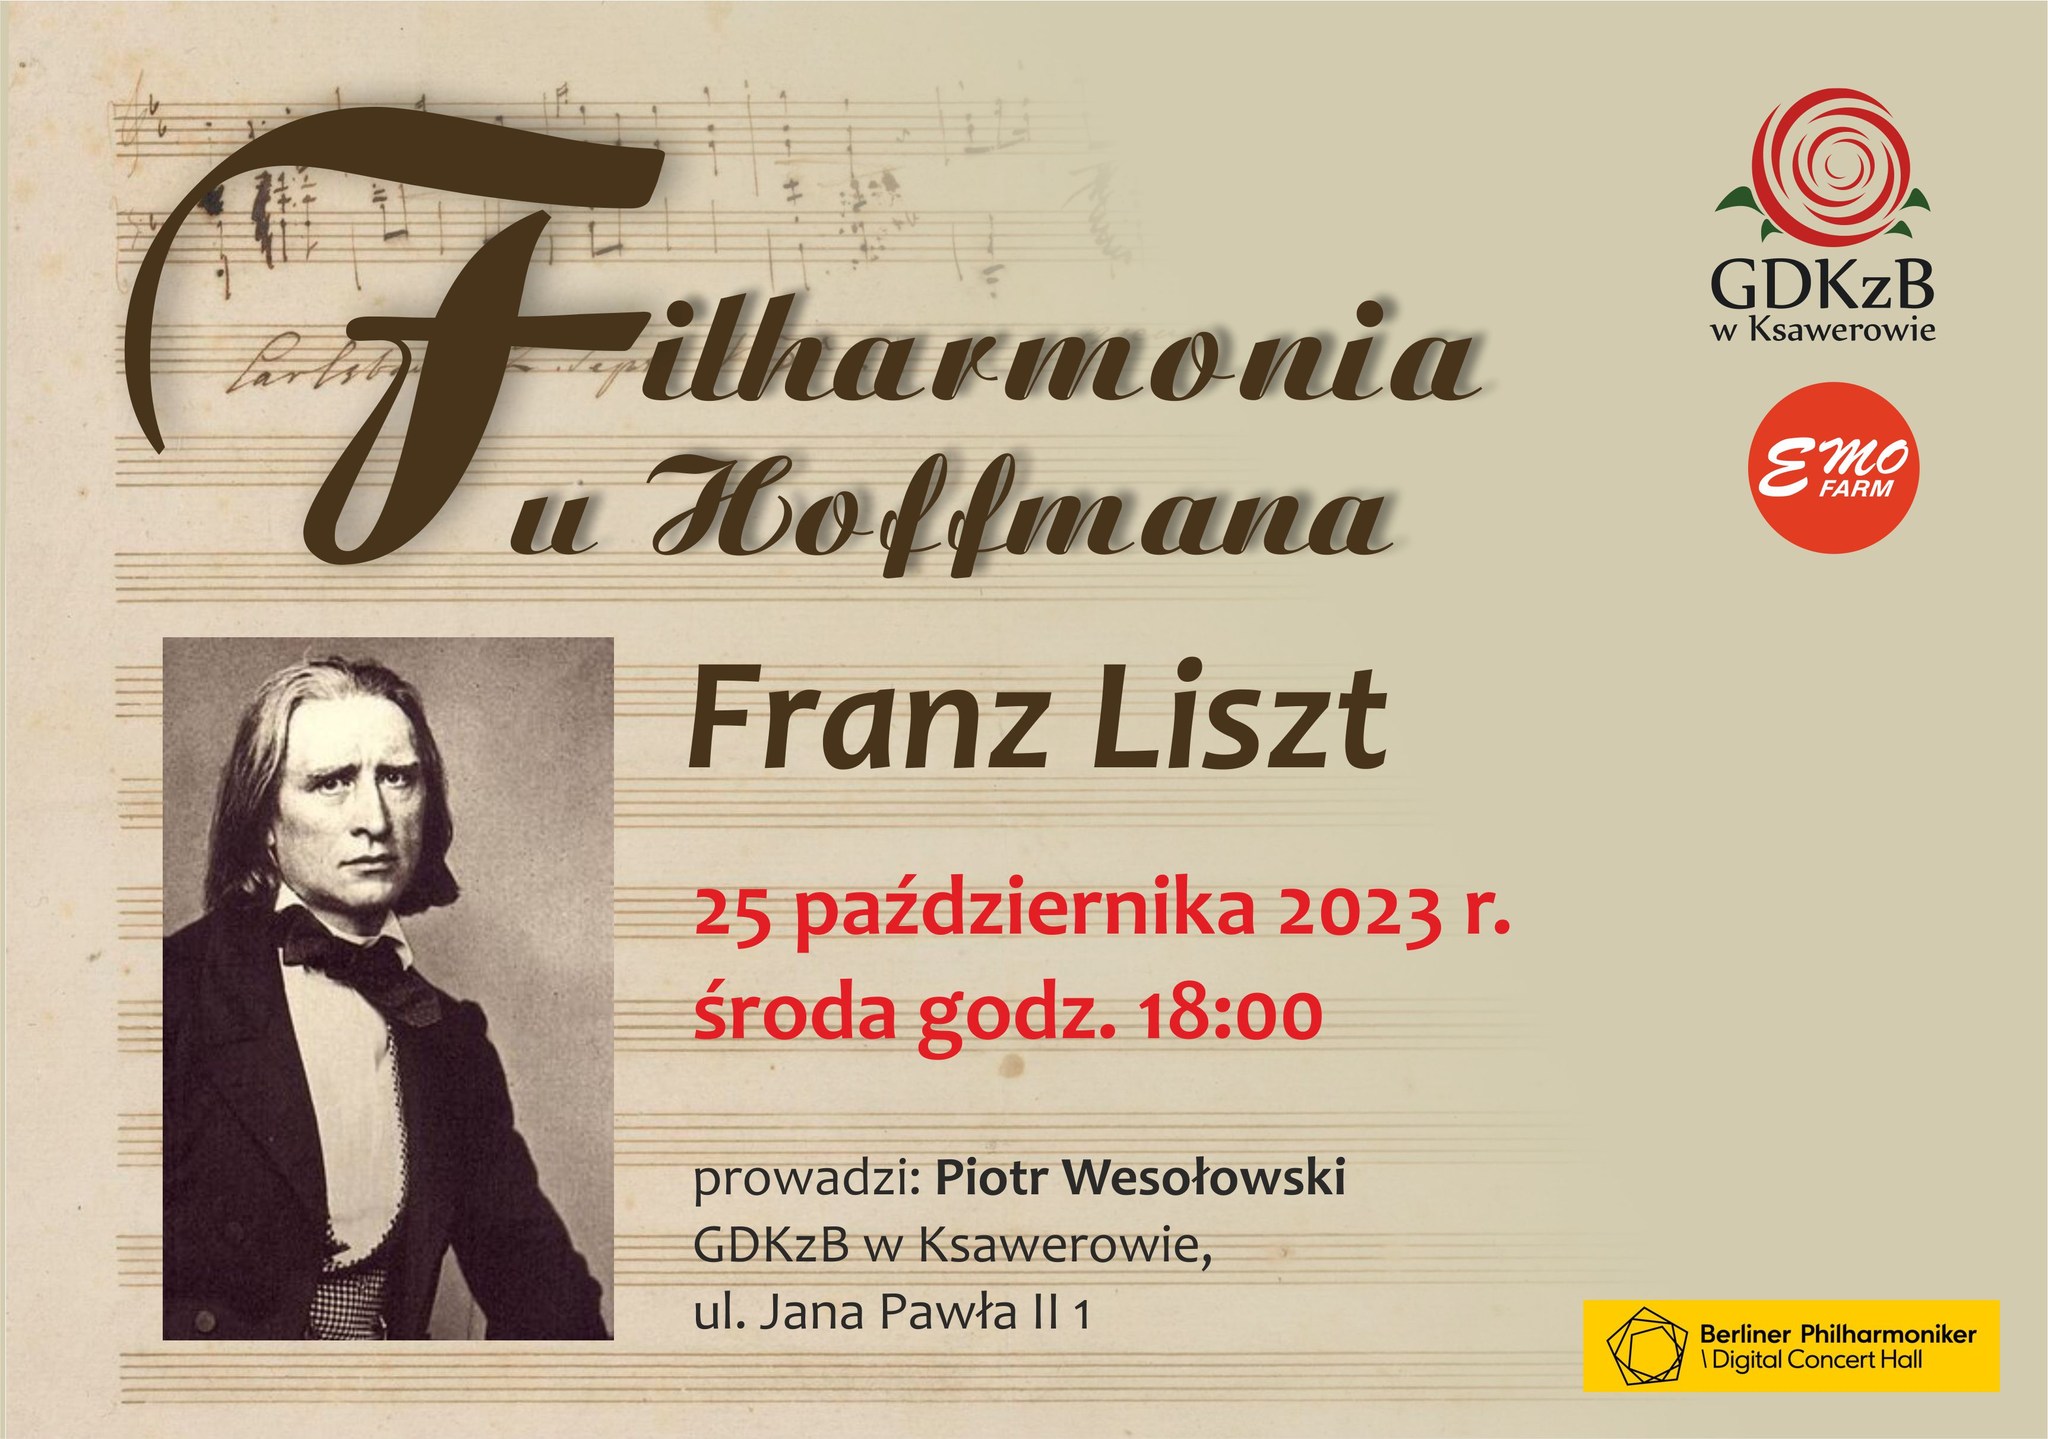 Filharmonia u Hoffmana Franz Liszt. 25 października 2023 środa godz. 18:00, prowadzi; Piotr Wesołowski GDKzB w Ksawerowie, ul. Jana Pawła II 1